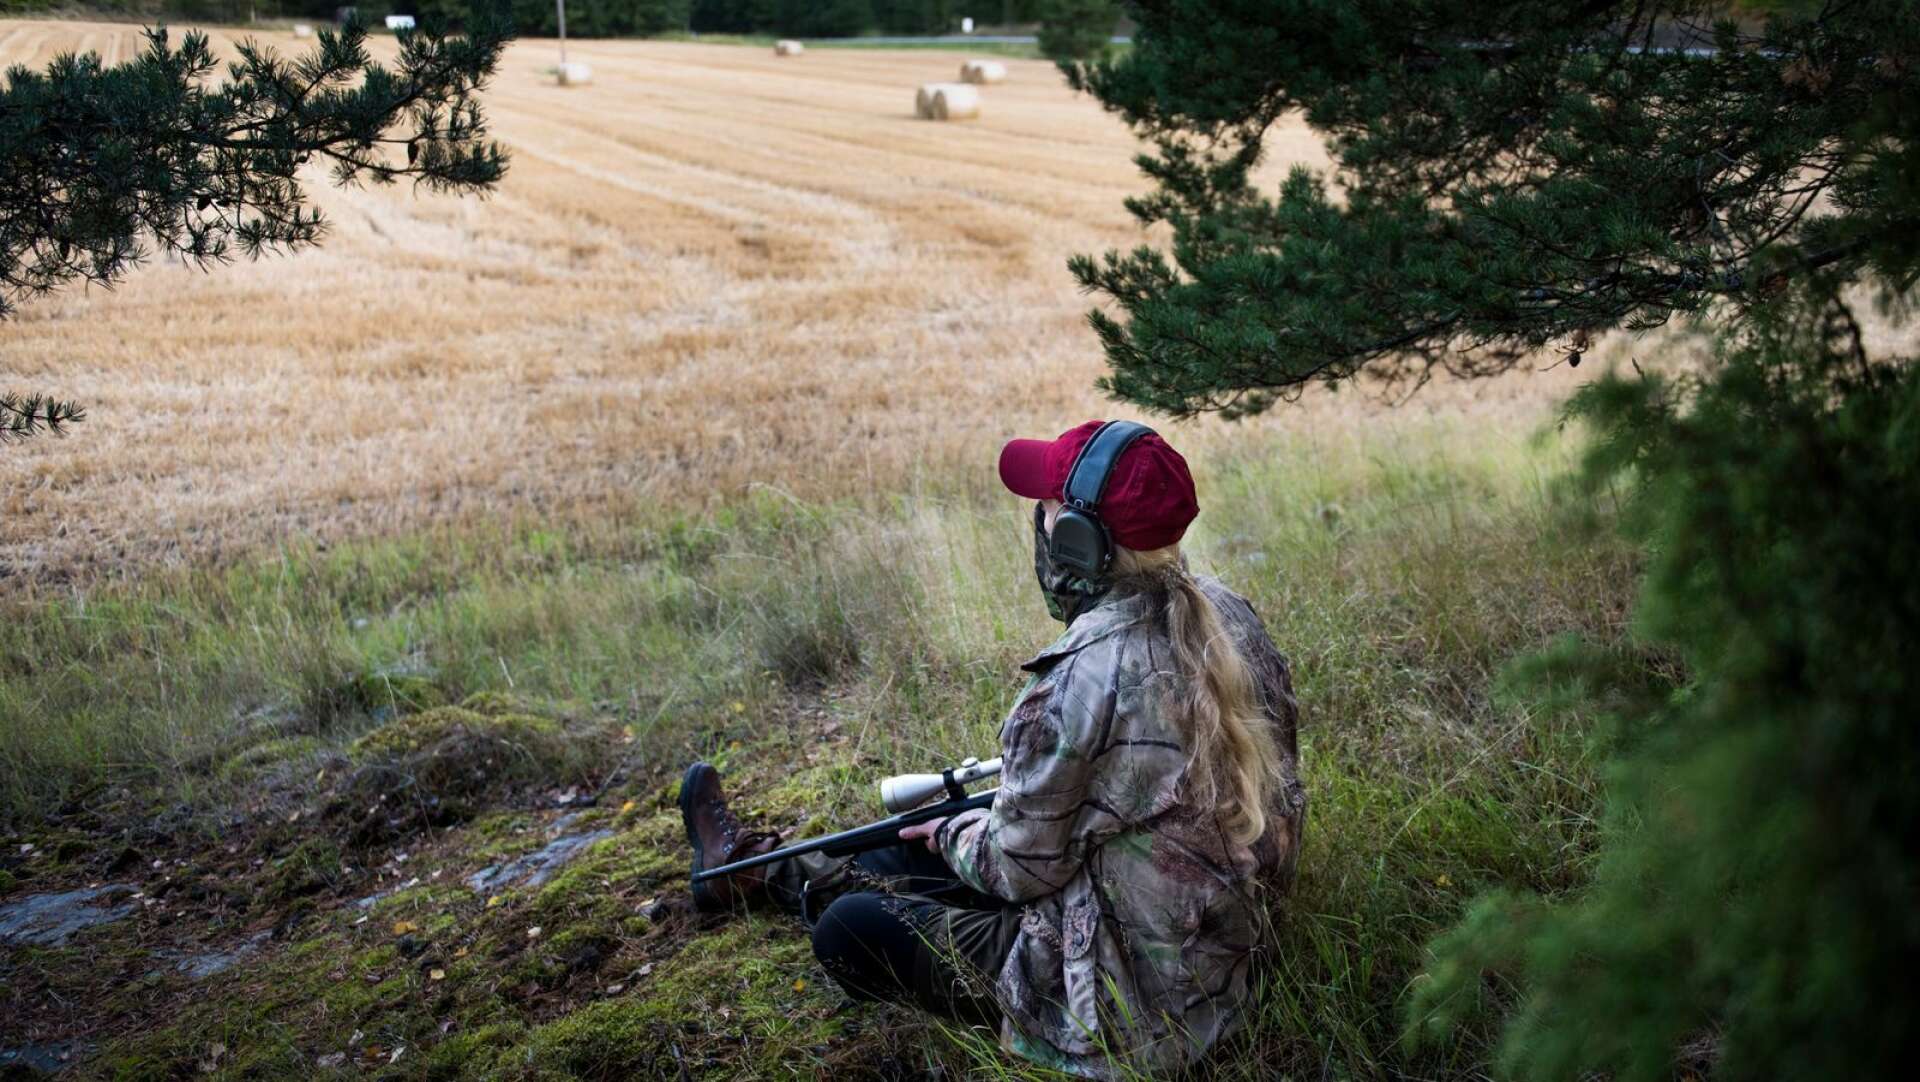 Sverige behöver en myndighet för jakt- och viltvårdsuppdraget anser författarna av inlägget.